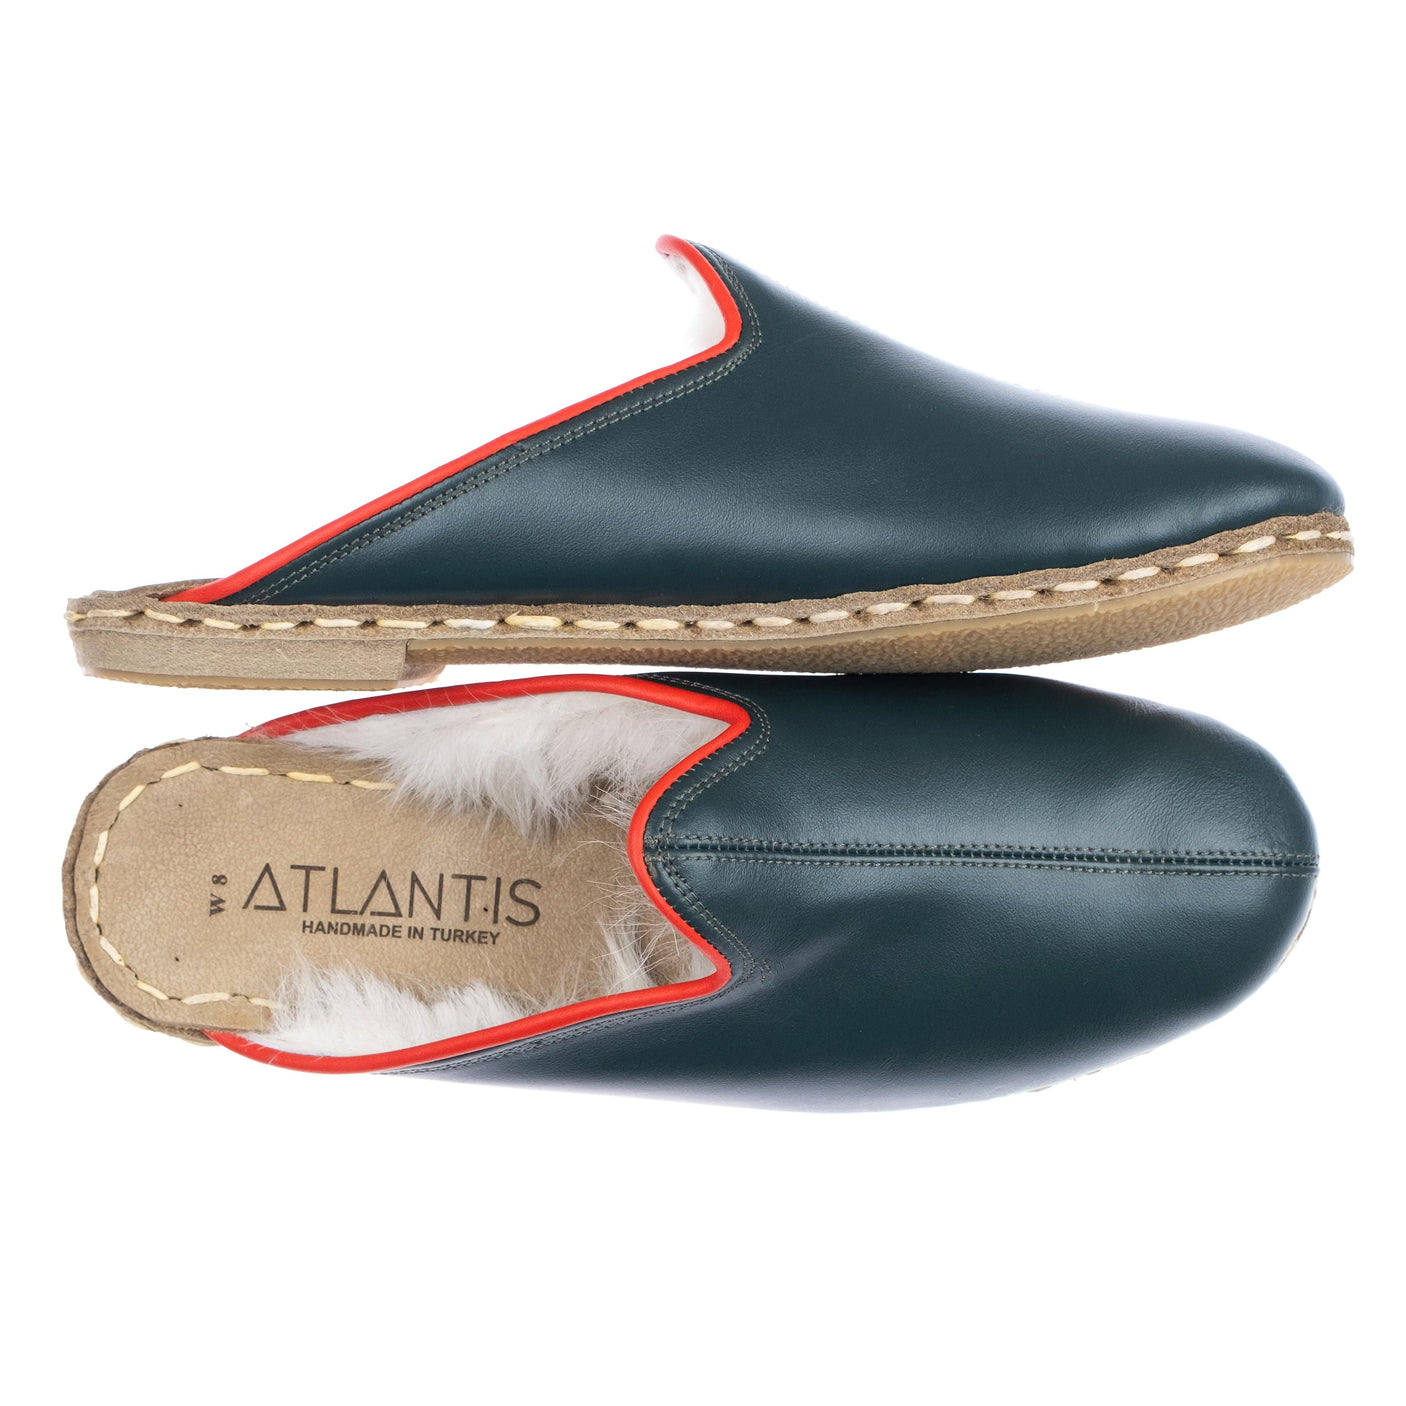 Dark Green Shearlings - Turkish Slippers for Women & Men : Atlantis Handmade Shoes